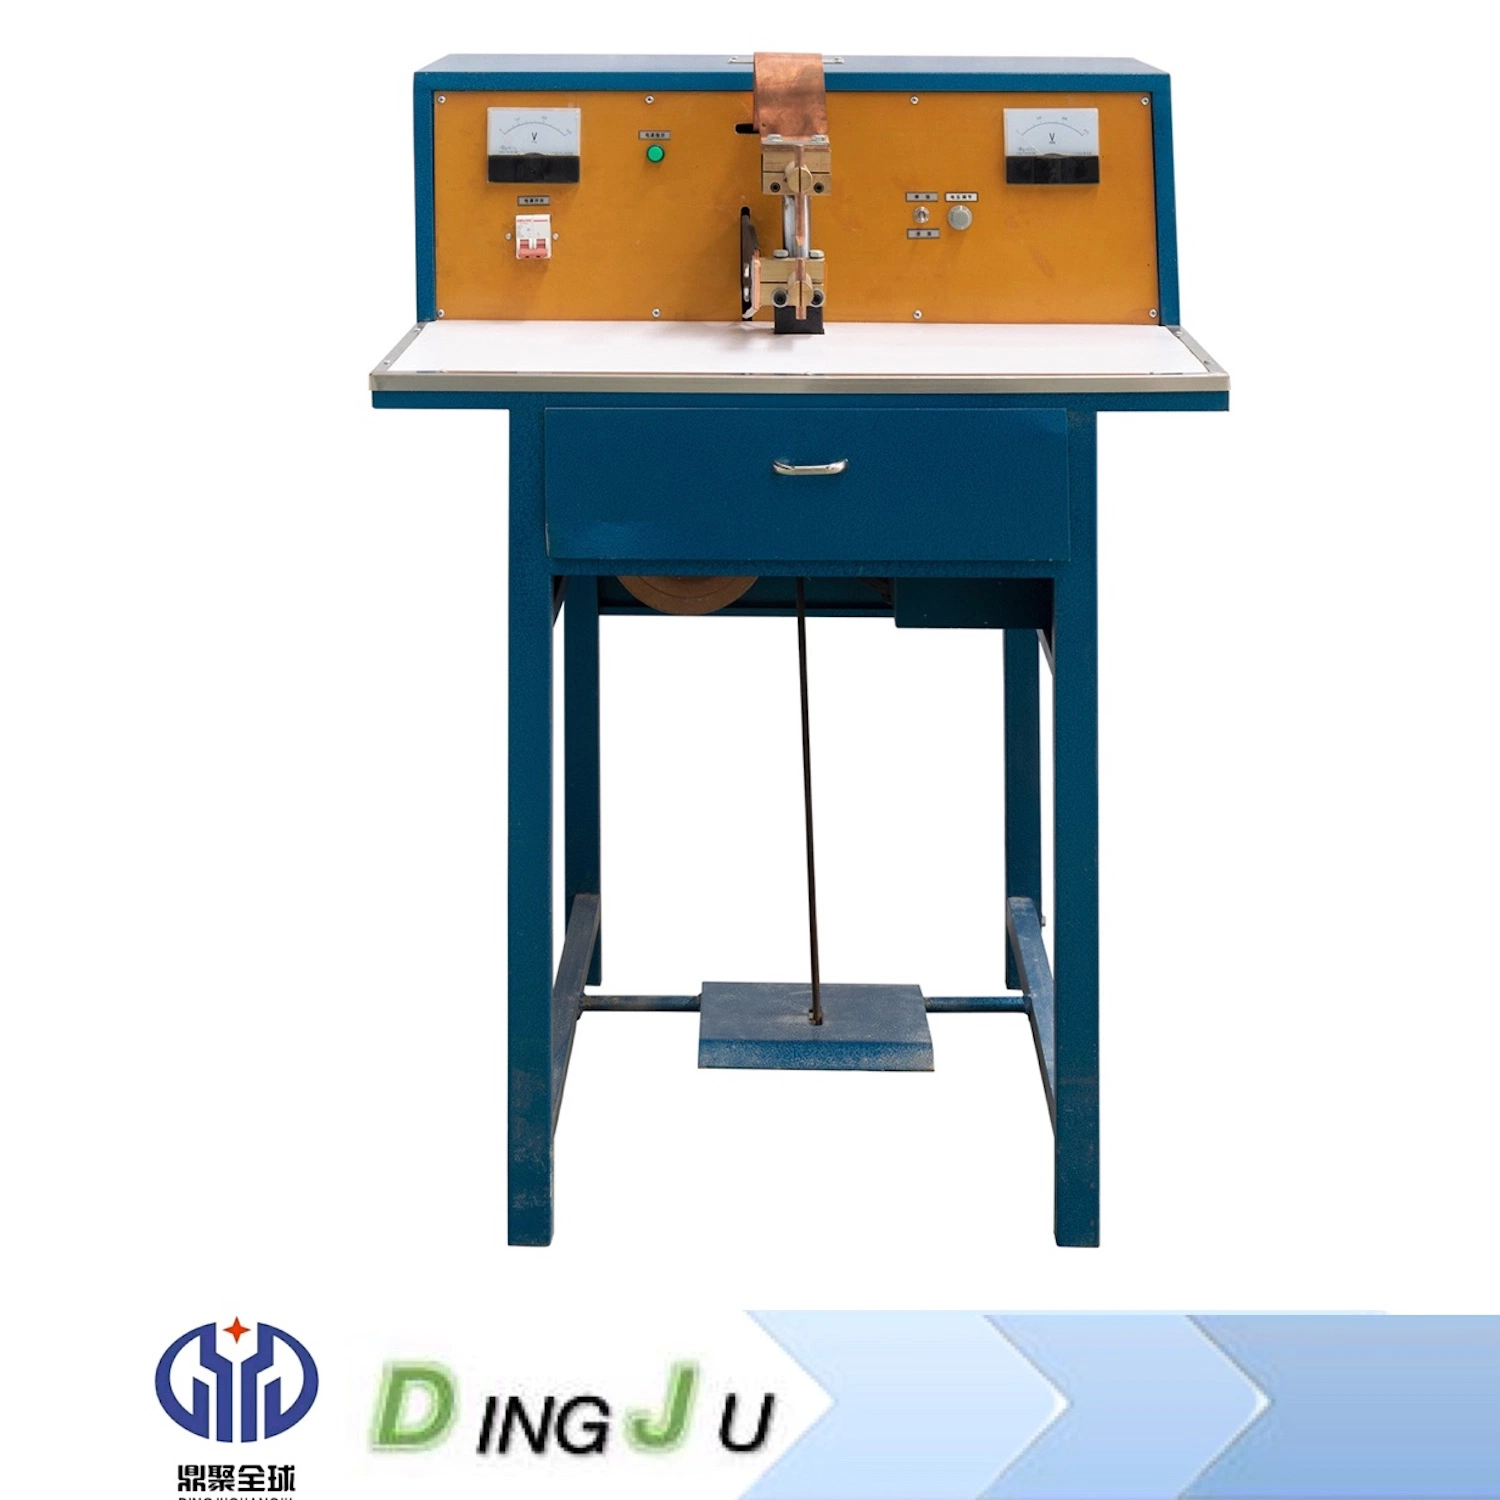 Dingju Series Desktop Capacitor Energy Storage Spot Welding Machine Resistance Welder Equipment